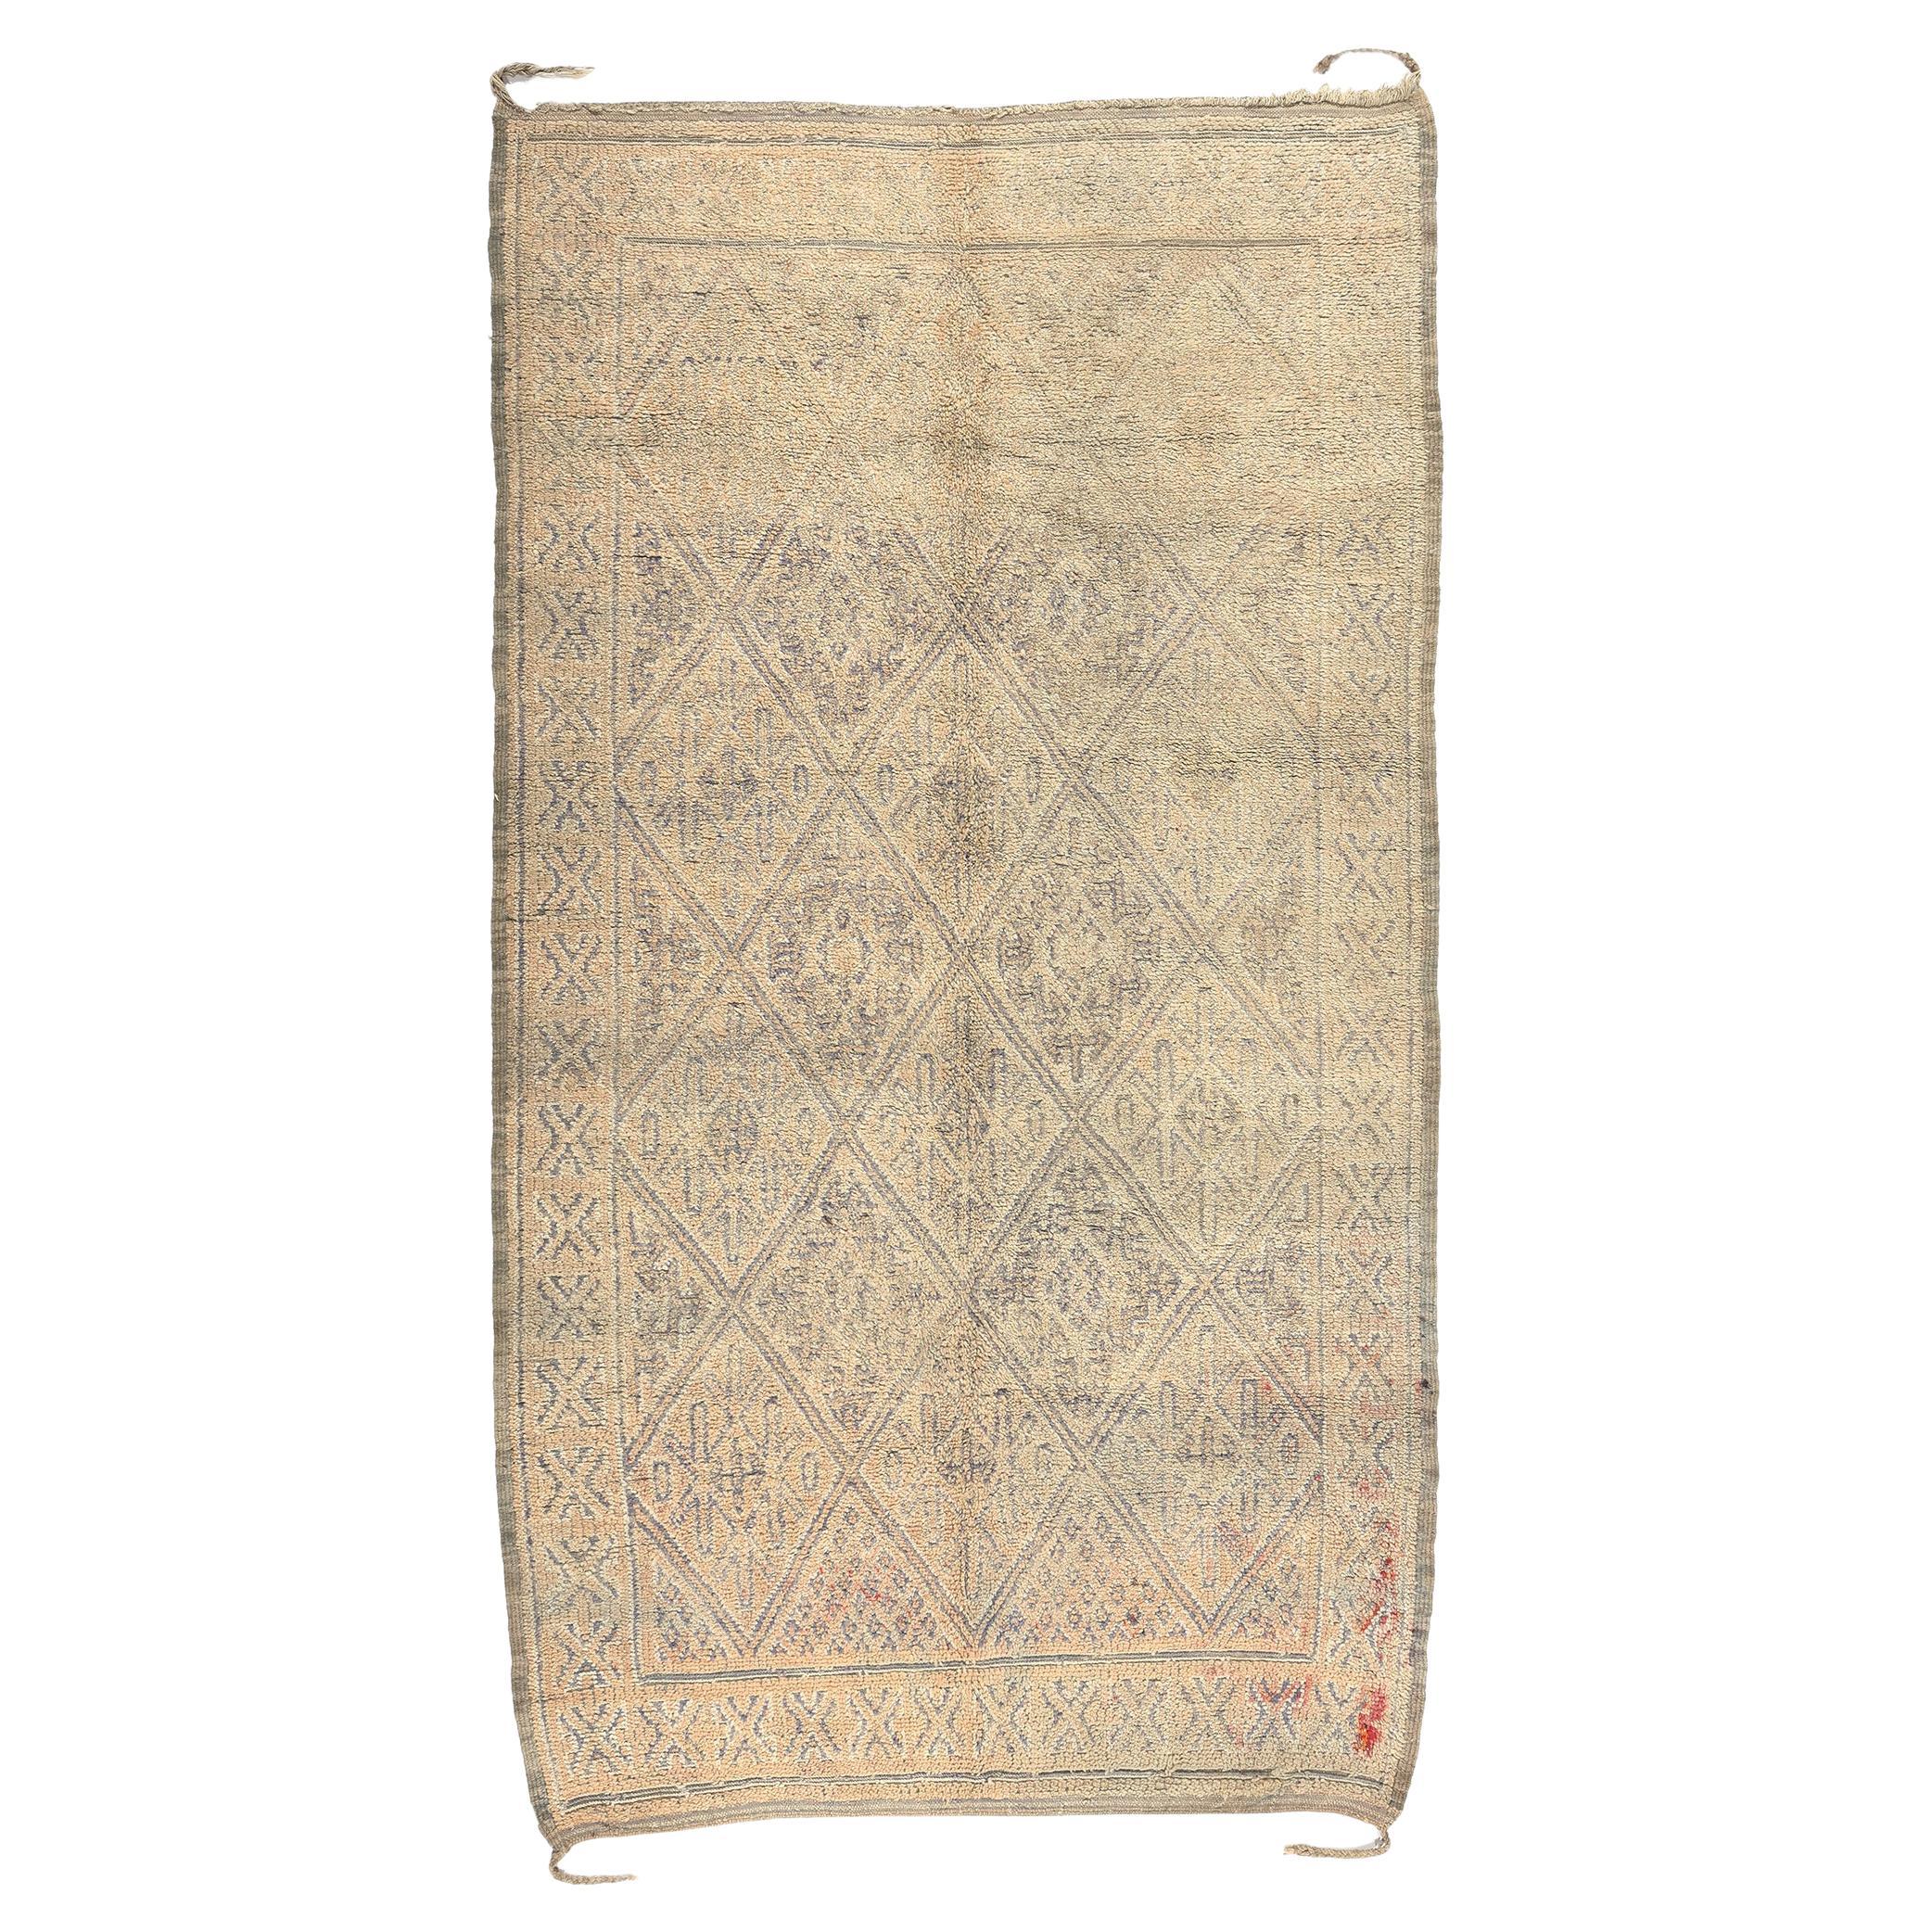 Vintage Beni MGuild Moroccan Rug, Cozy Nomad Meets Subtle Shibui For Sale